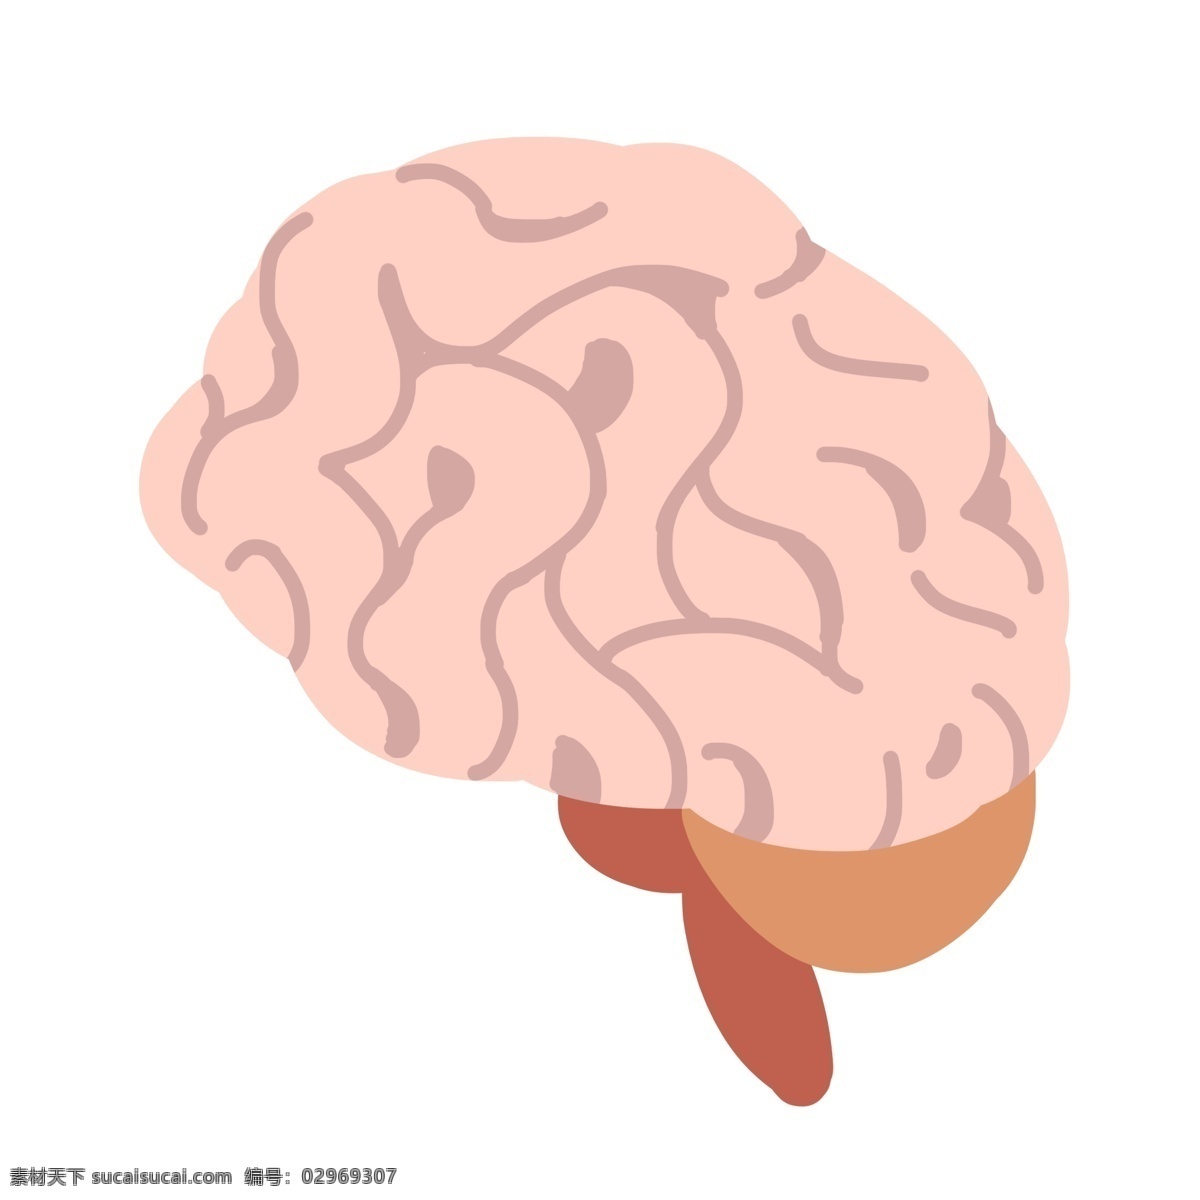 卡通 人体 大脑 插画 人体大脑 肉色的大脑 健康的大脑 脑子 人体器官 身体器官 卡通大脑插画